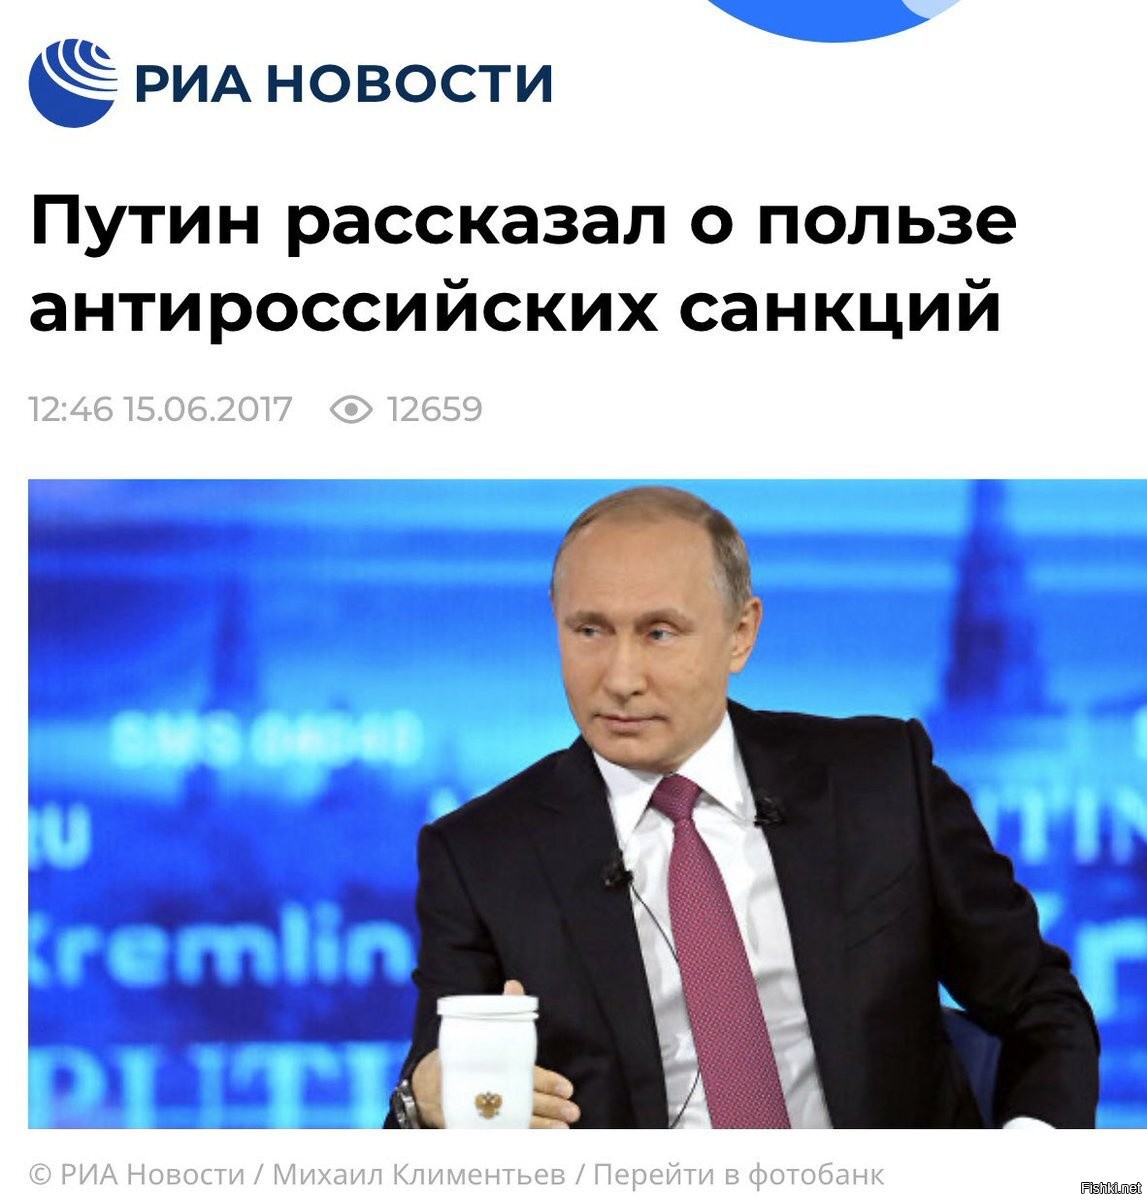 Санкции игры россия